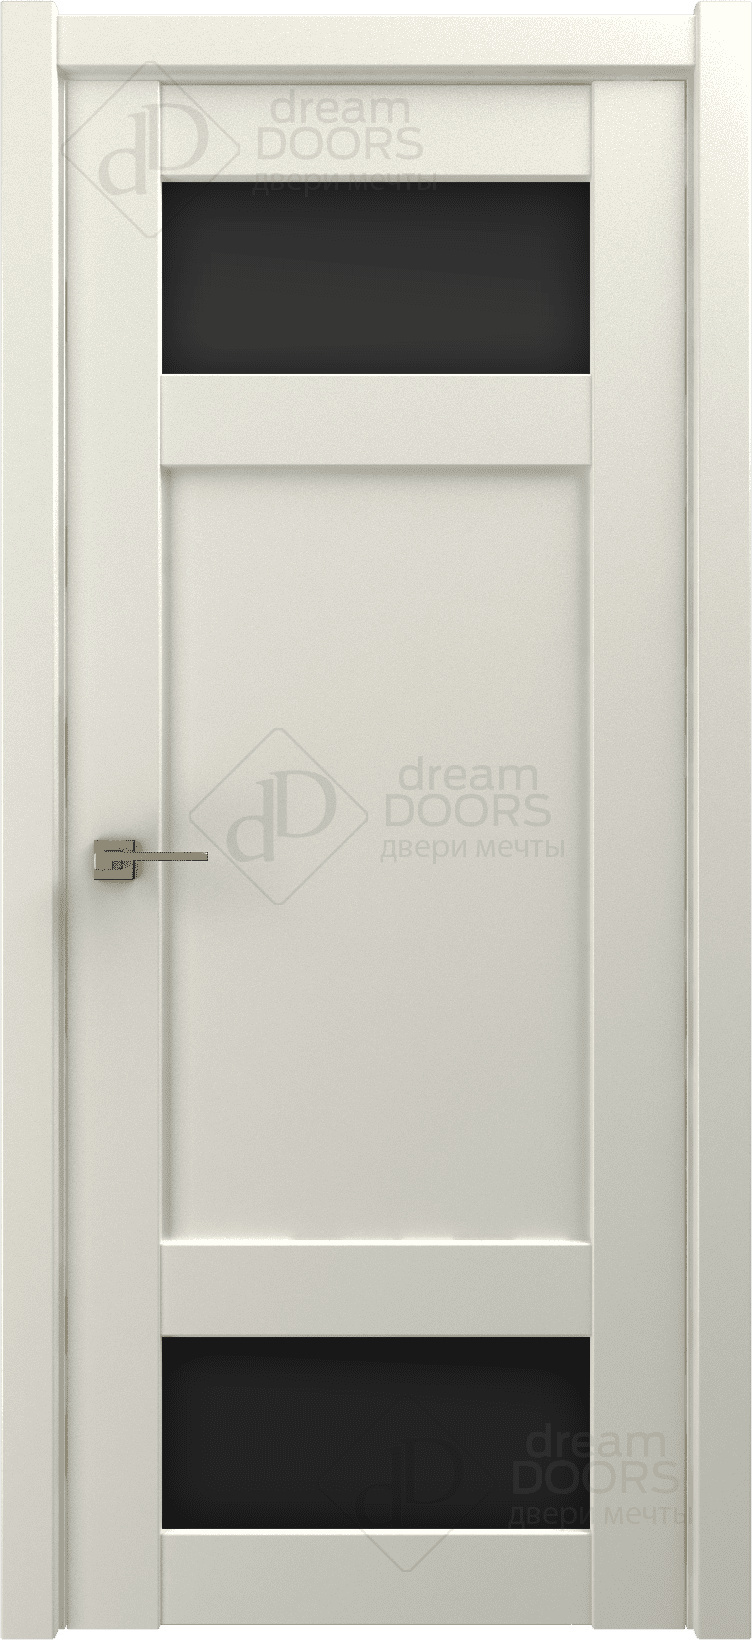 Dream Doors Межкомнатная дверь G24, арт. 18251 - фото №4